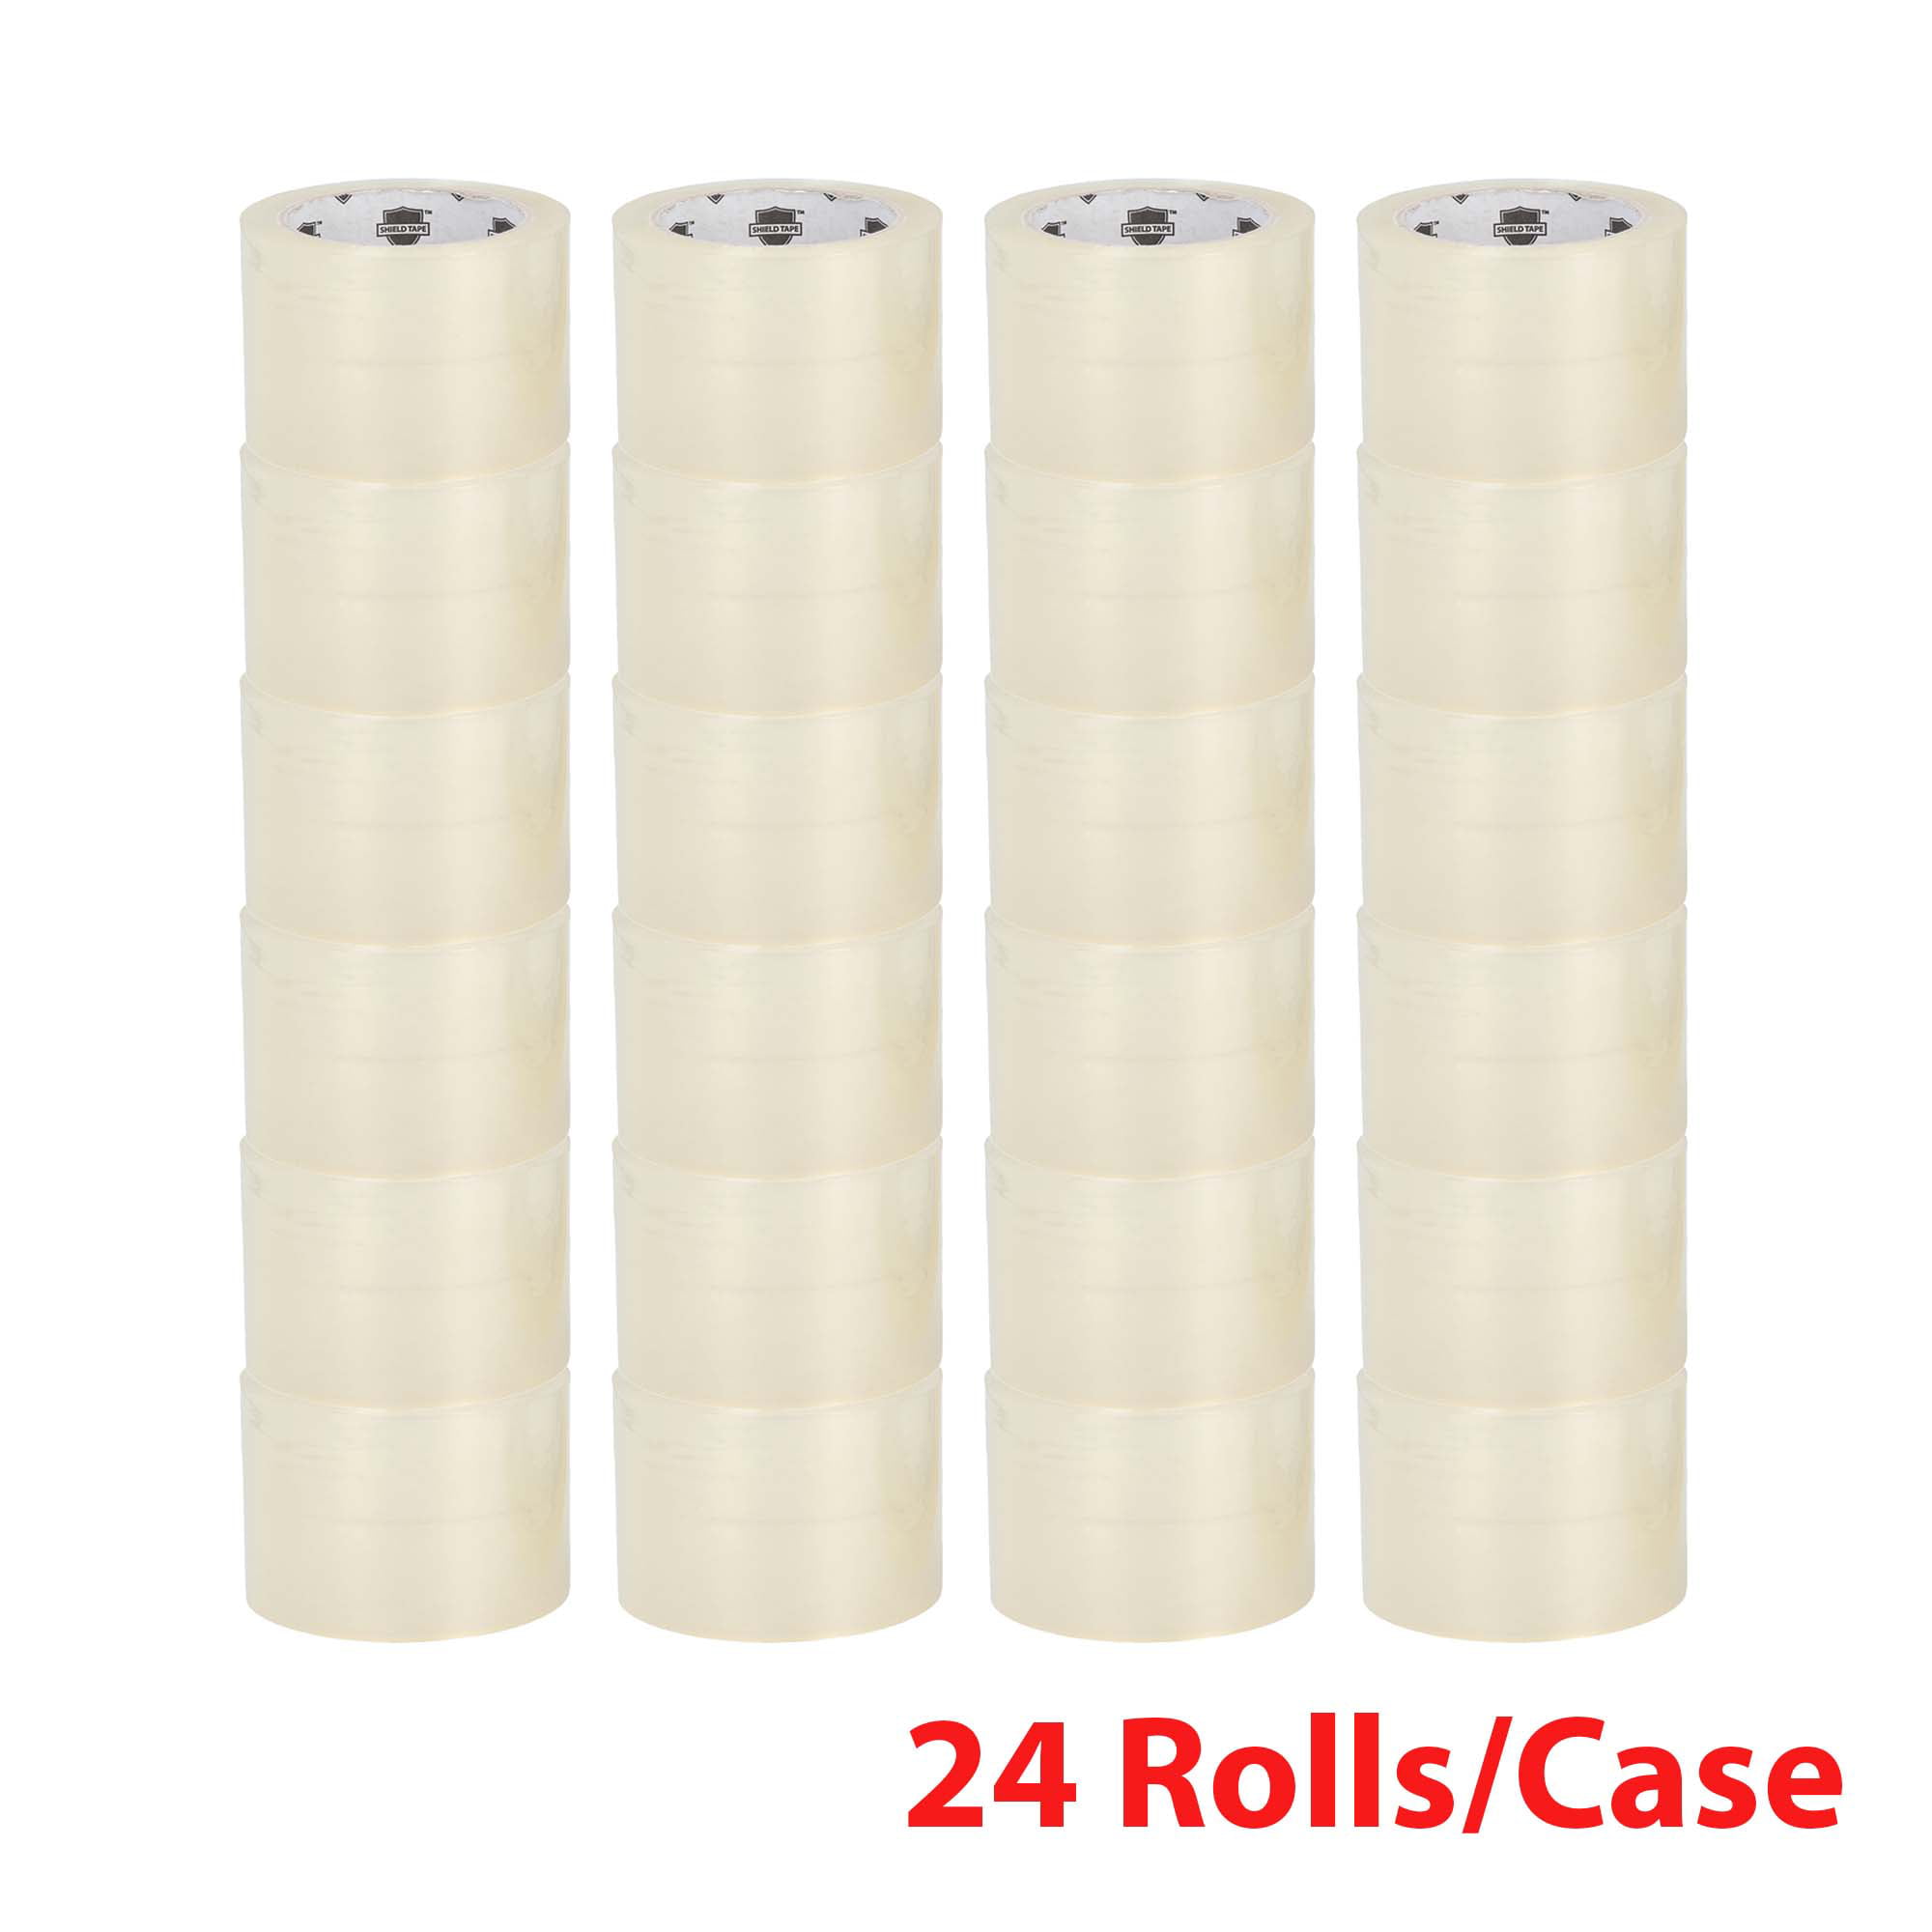 30 ROLLS Carton Box Sealing Packaging Packing Tape 1.6mil 2" x 110 yard 330 ft